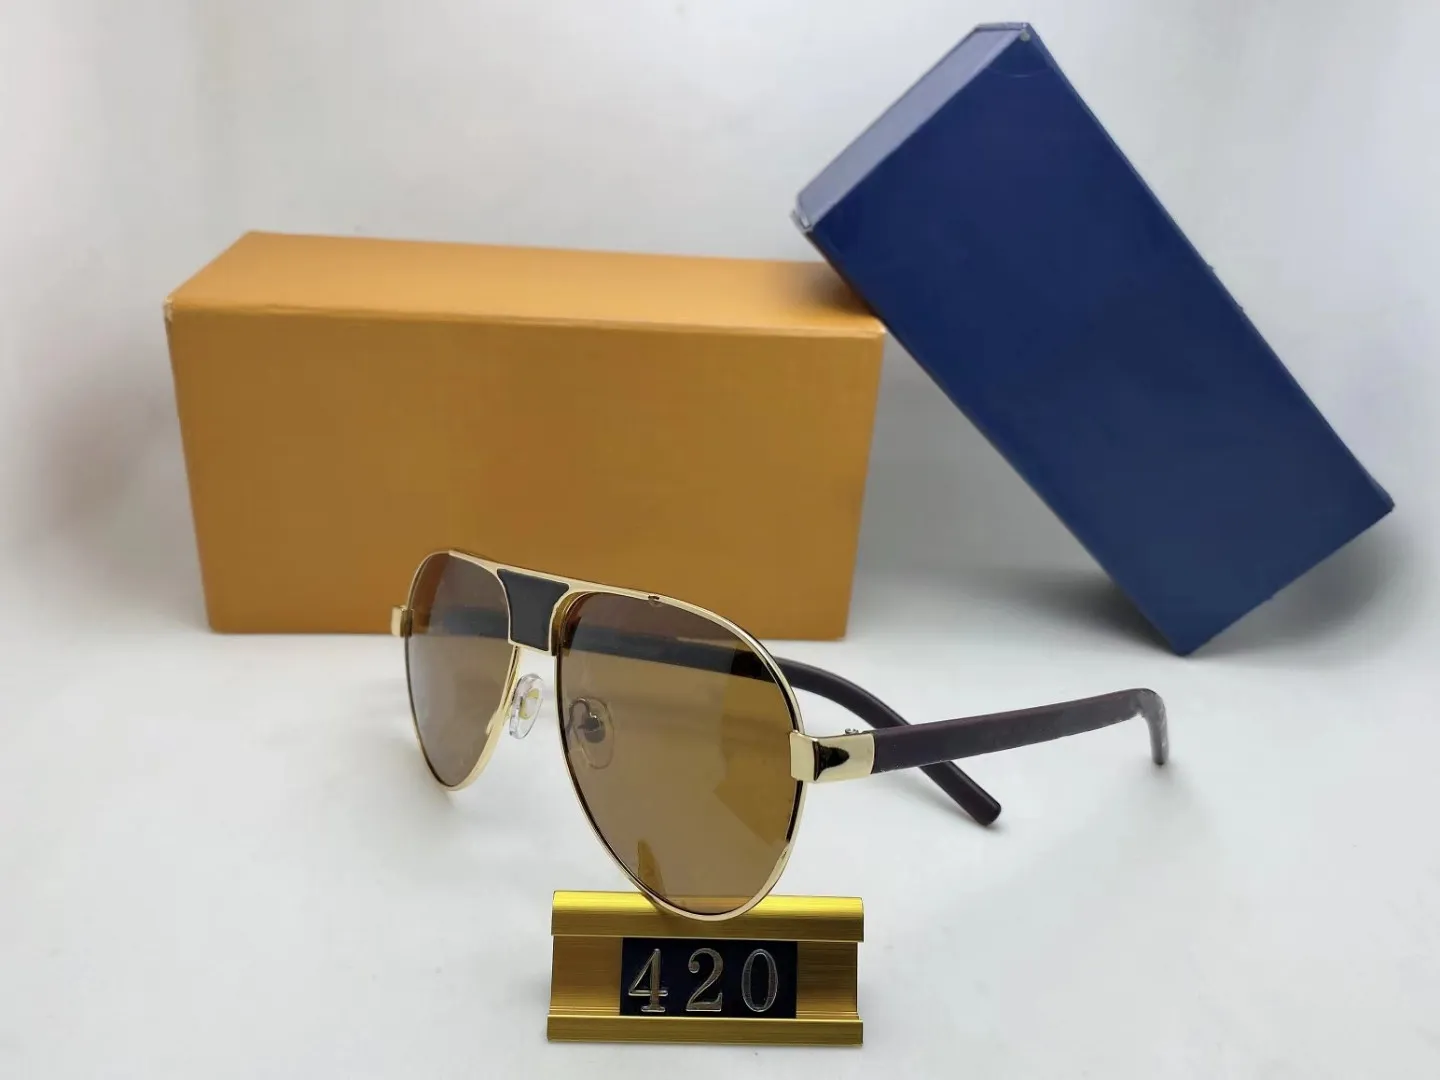 Lüks güneş gözlükleri 420full çerçeve vintage tasarımcı kanıtlar erkekler için güneş gözlüğü parlak altın logo sıcak satma kaplama üst